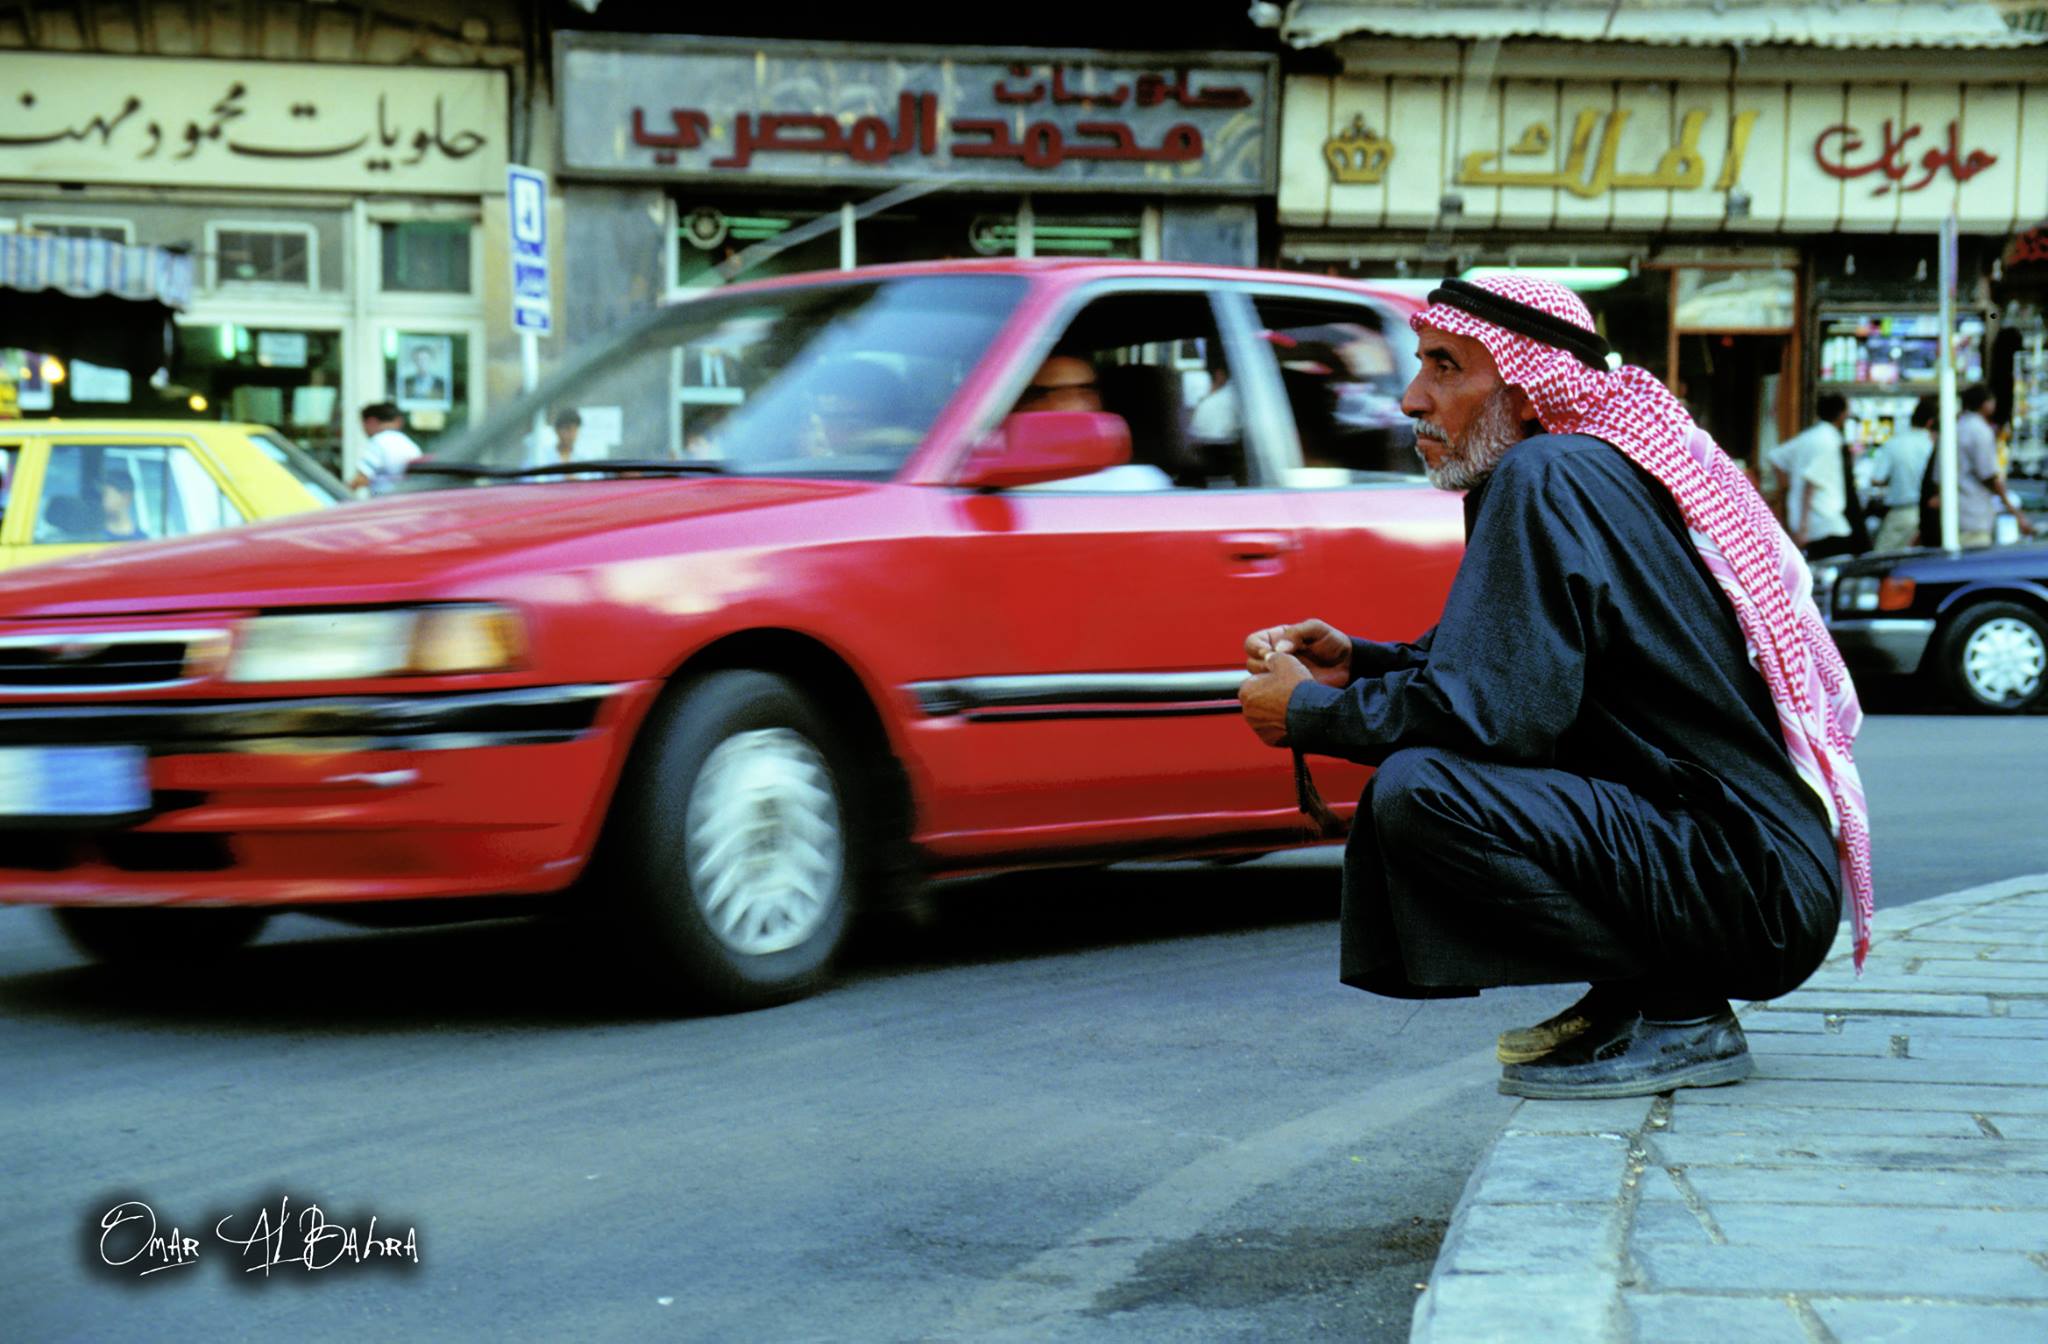 التاريخ السوري المعاصر - الانتظار في ساحة المرجة في دمشق عام 2000